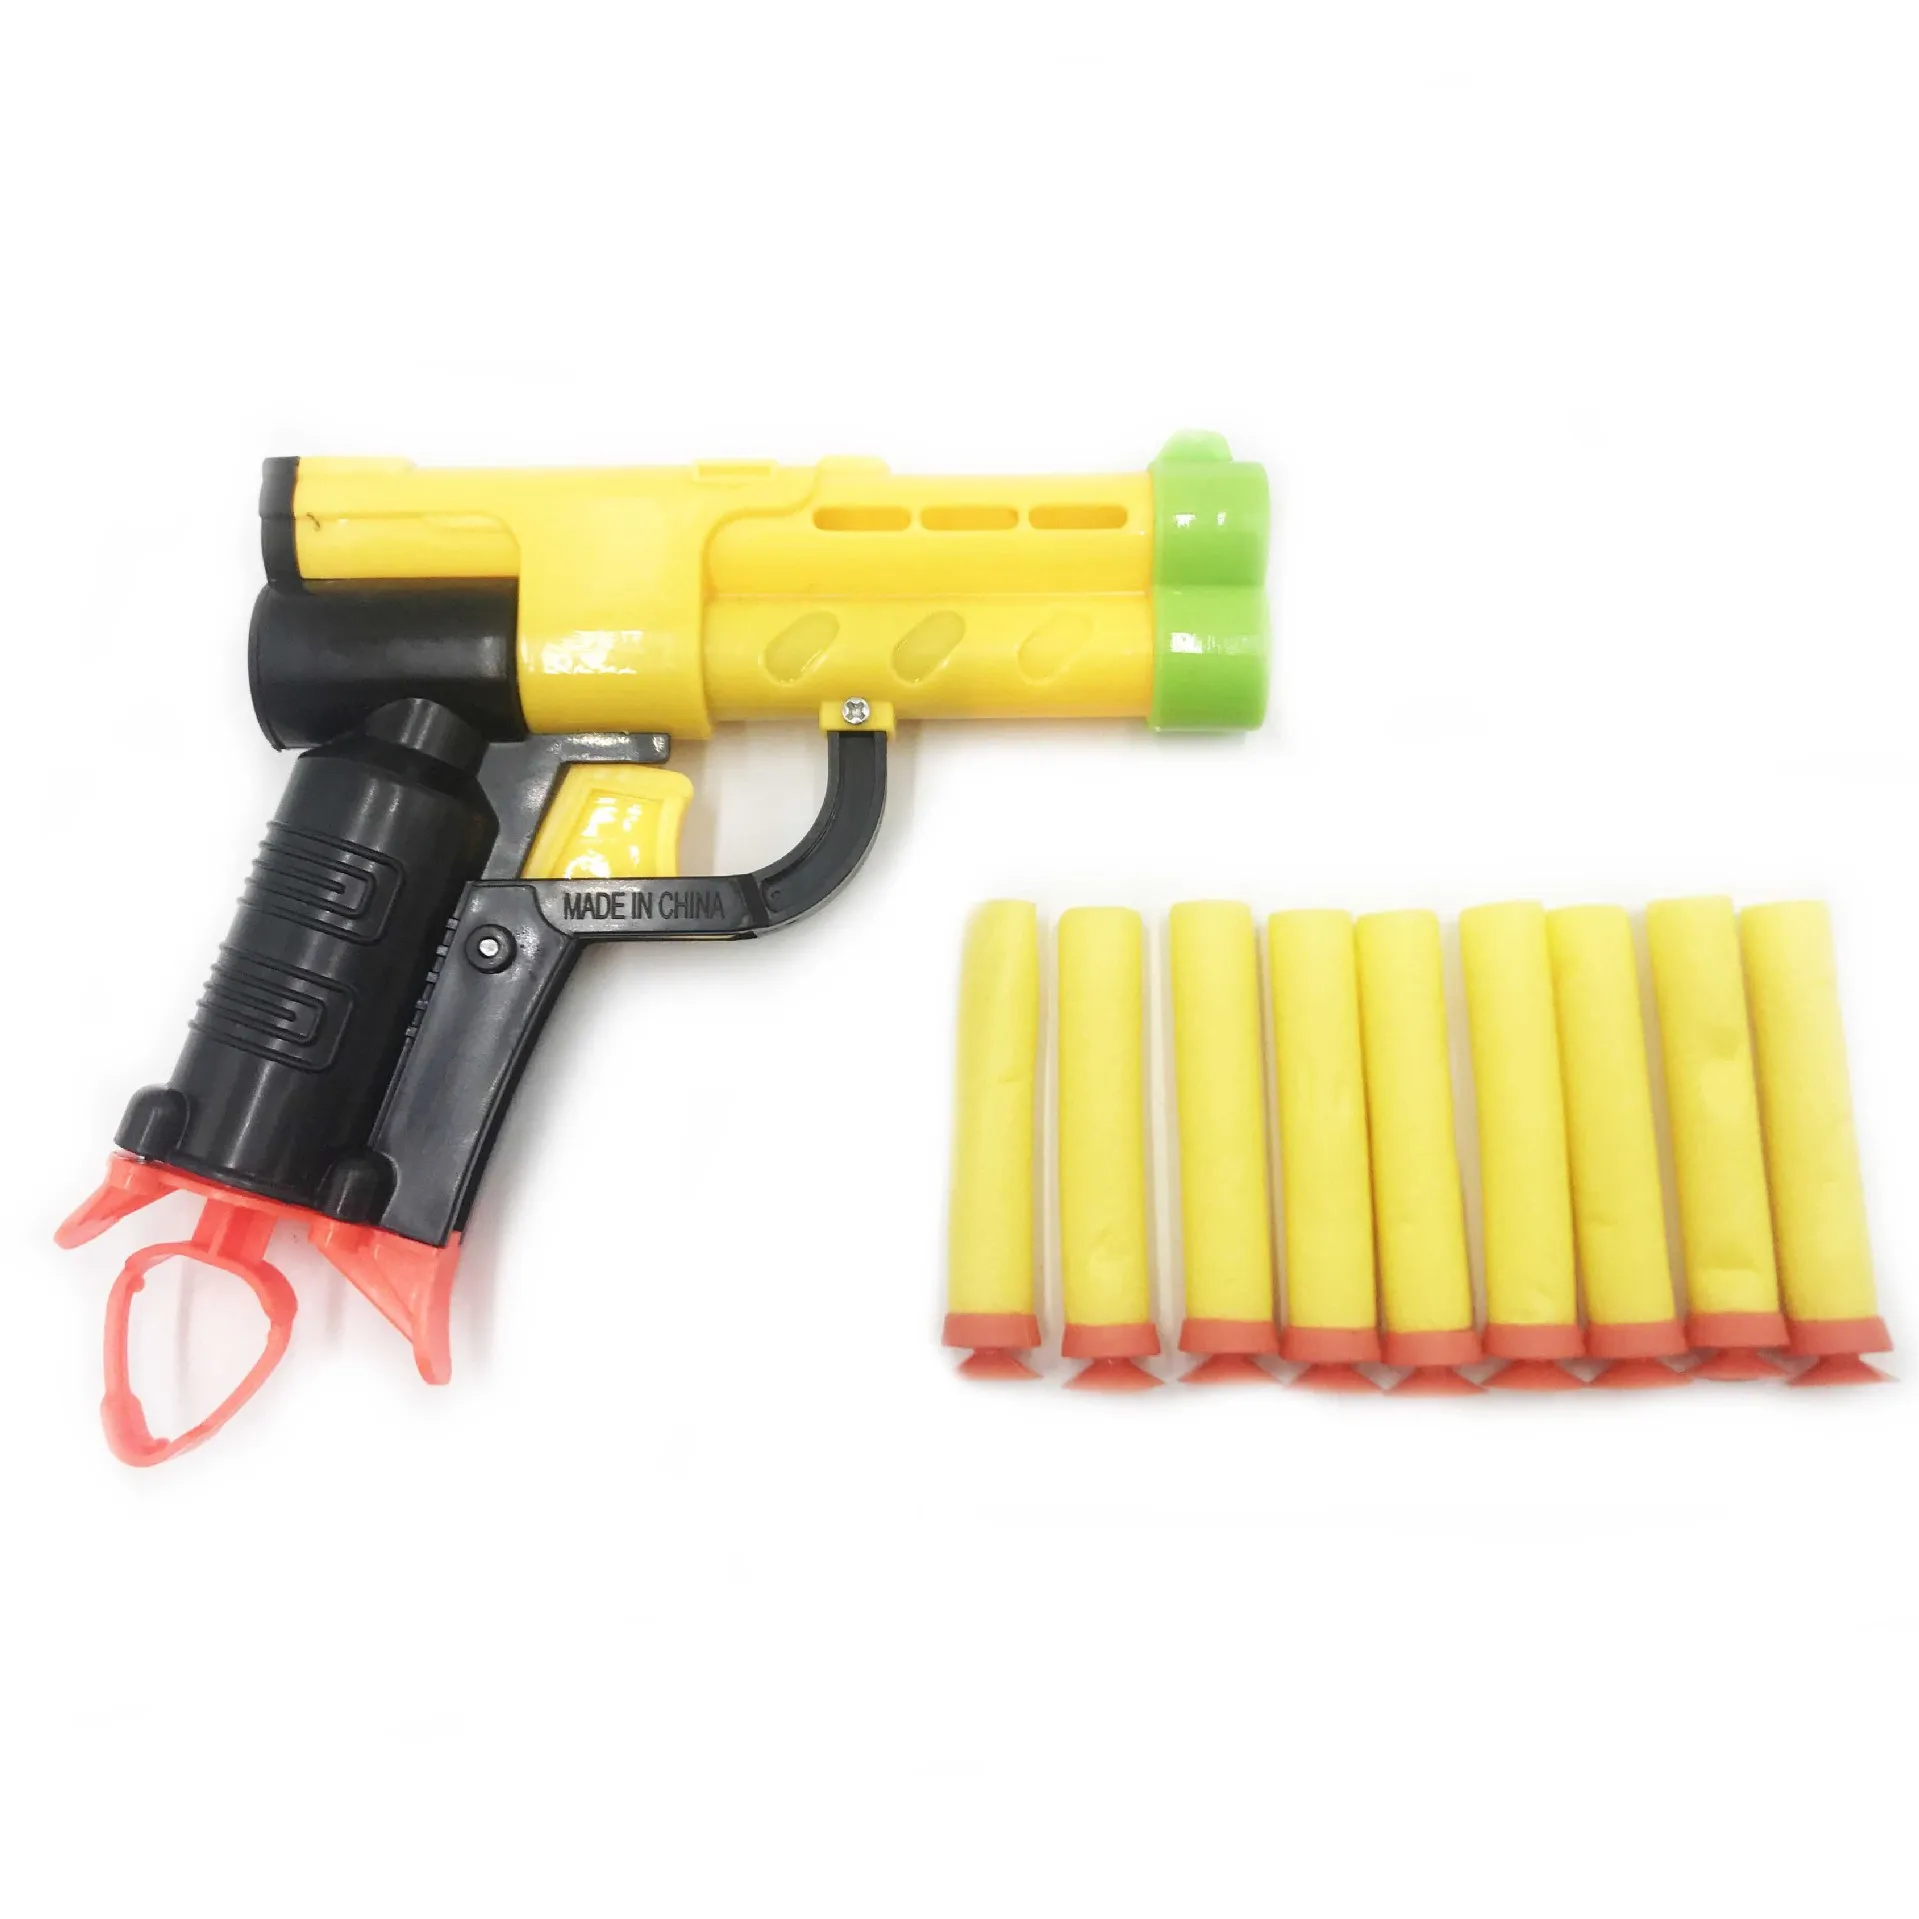 Новая съемка целевой дети звук свет съемки игры Высокая точность забил 3 s Автоматический сброс электрический пистолет целевой вечерние подарок для дети - Цвет: Toy Gun